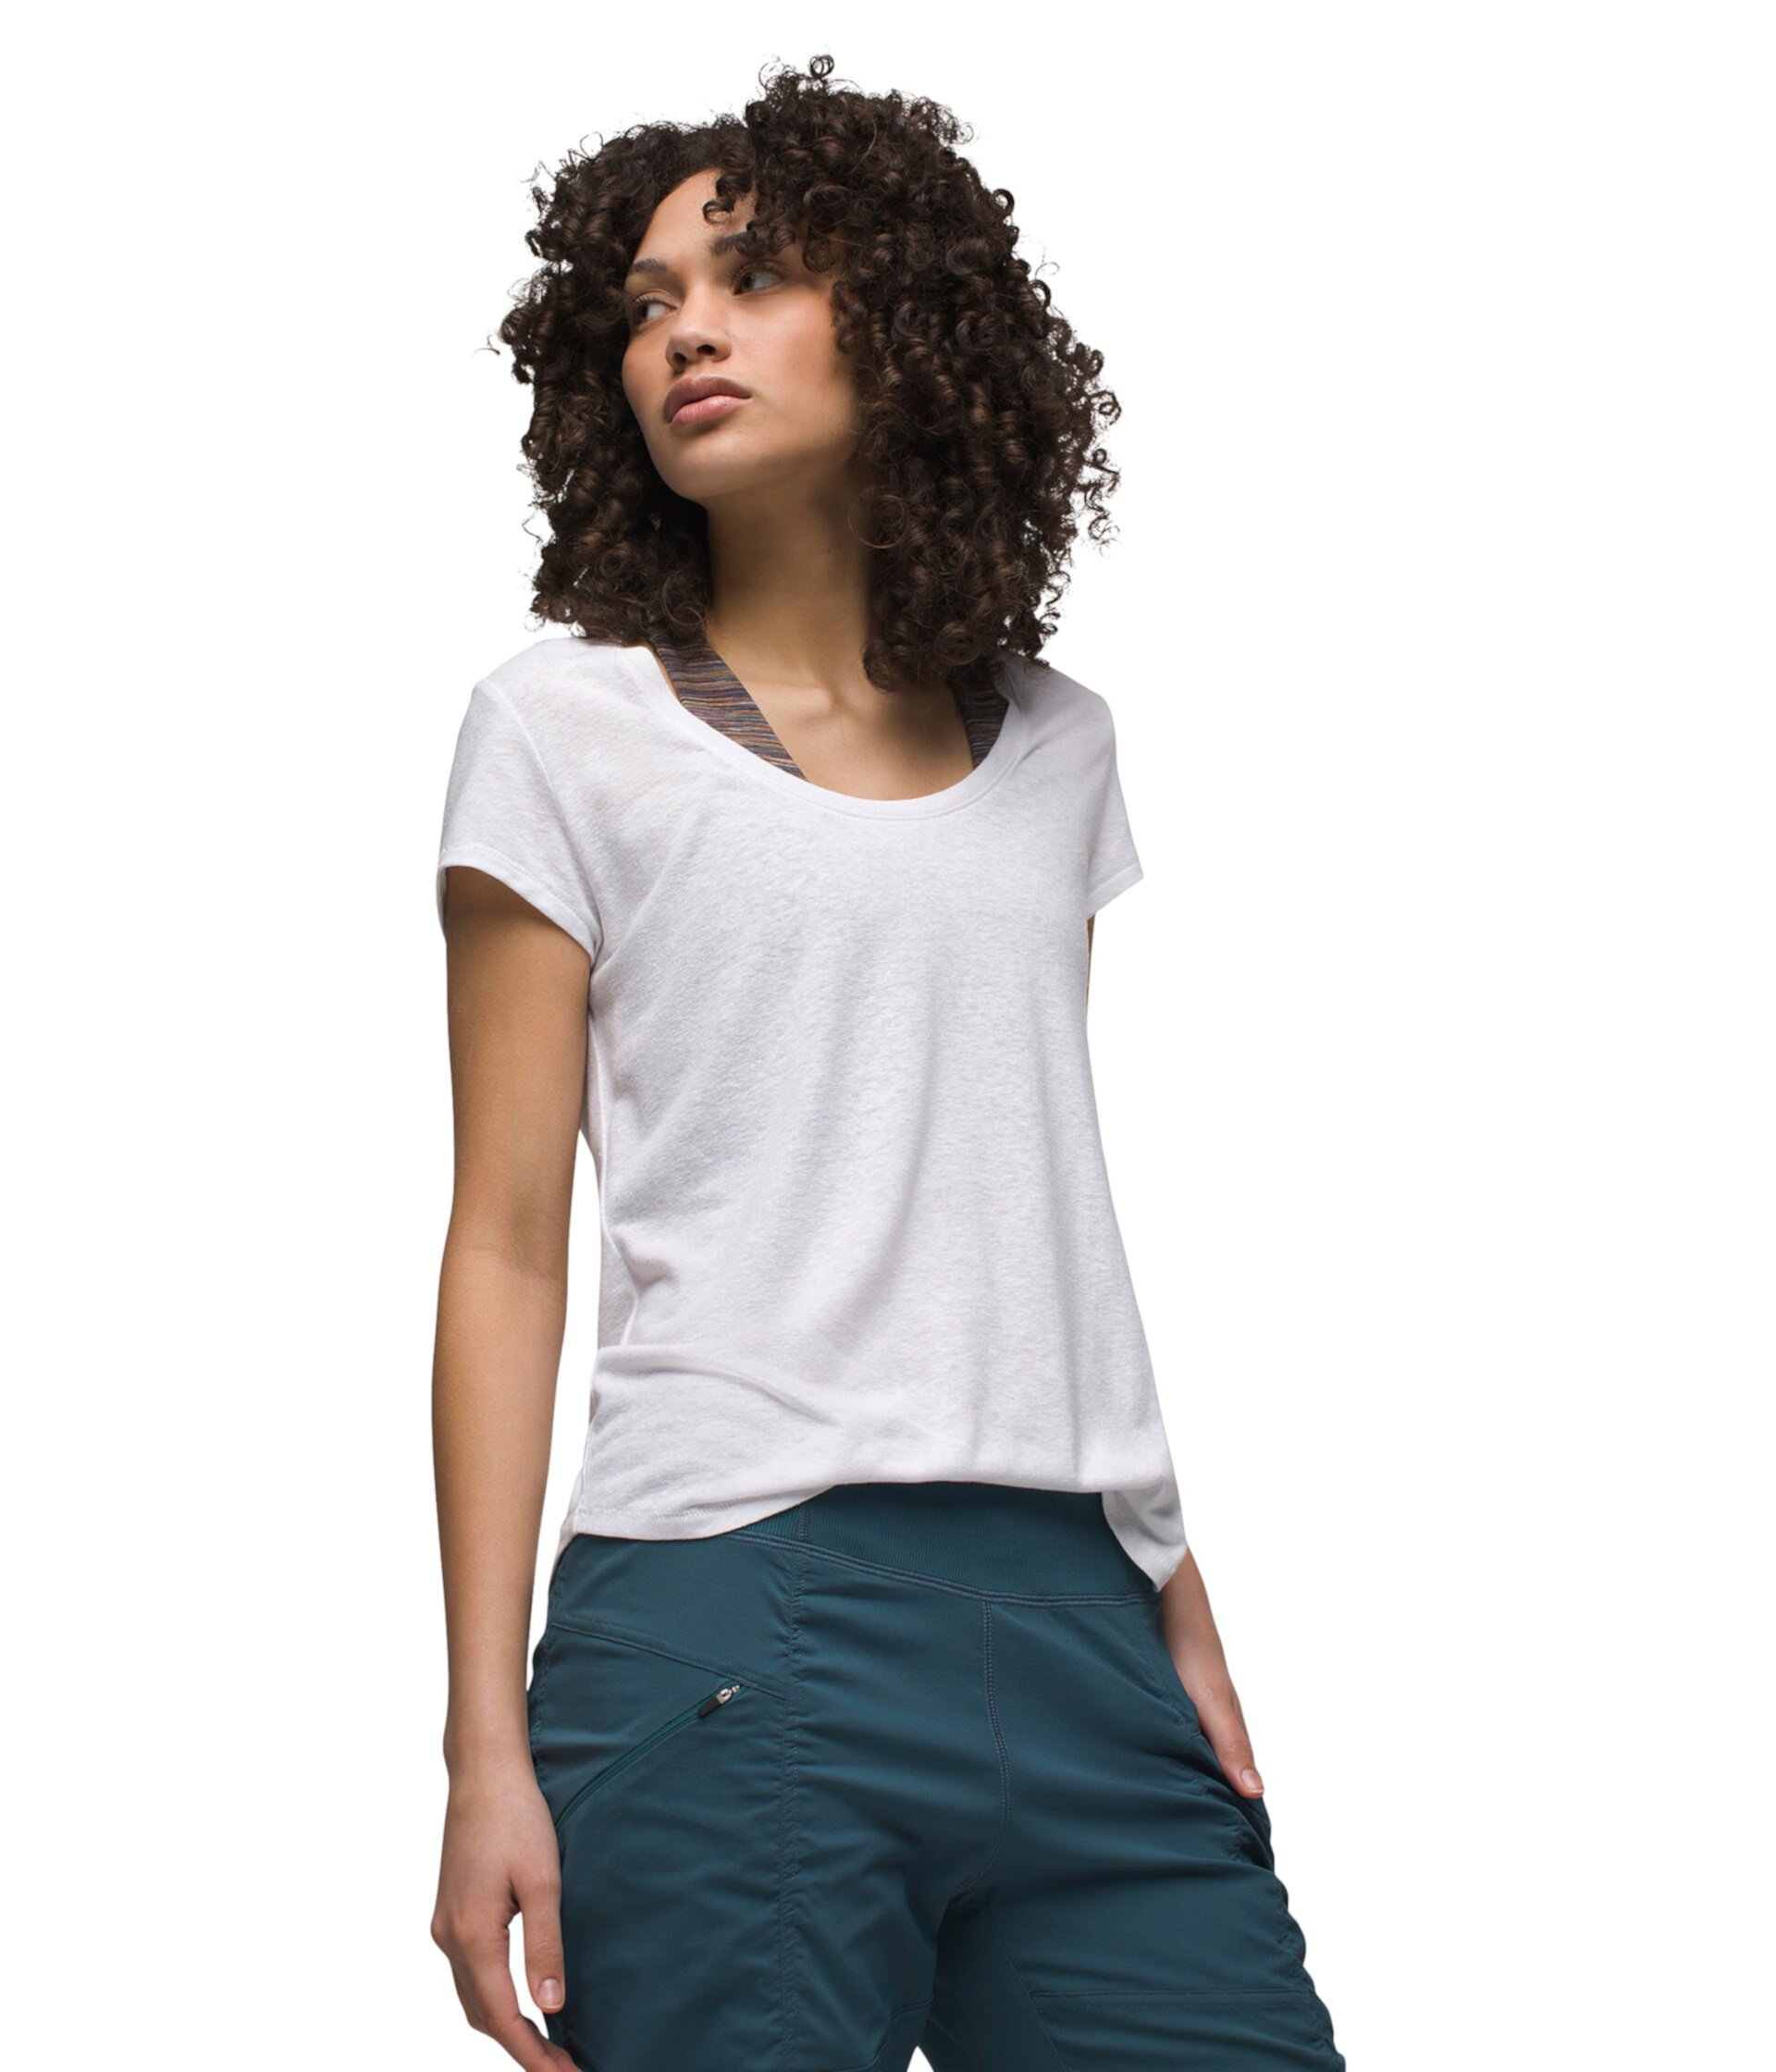 Женская футболка Prana Cozy Up Scoop Neck Tee из конопли, переработанного полиэстера и Lyocell TENCEL™. Prana